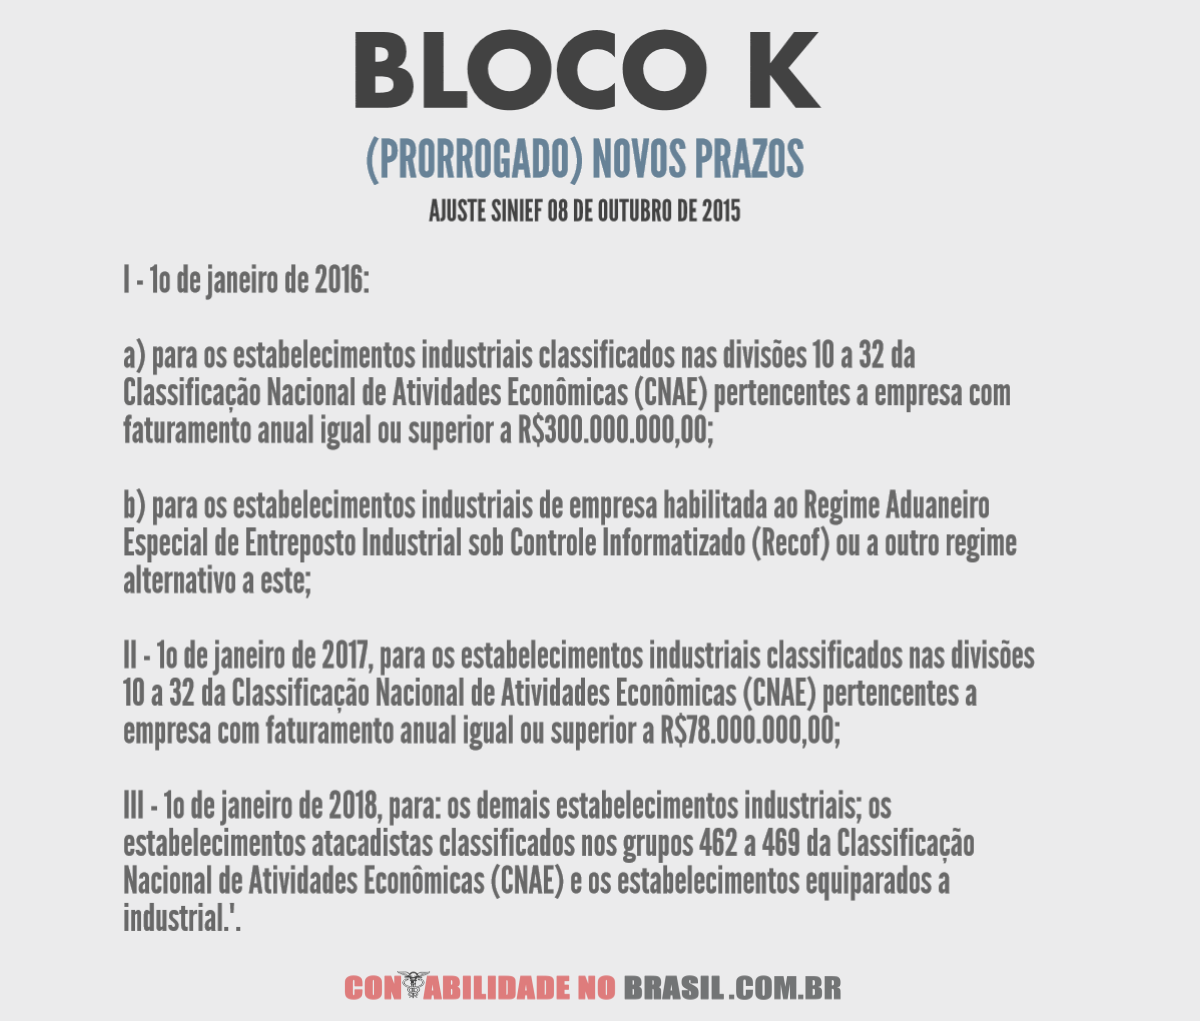 BLOCO K novo prazo, prorrogado com o Ajuste SINIEF 08/2015